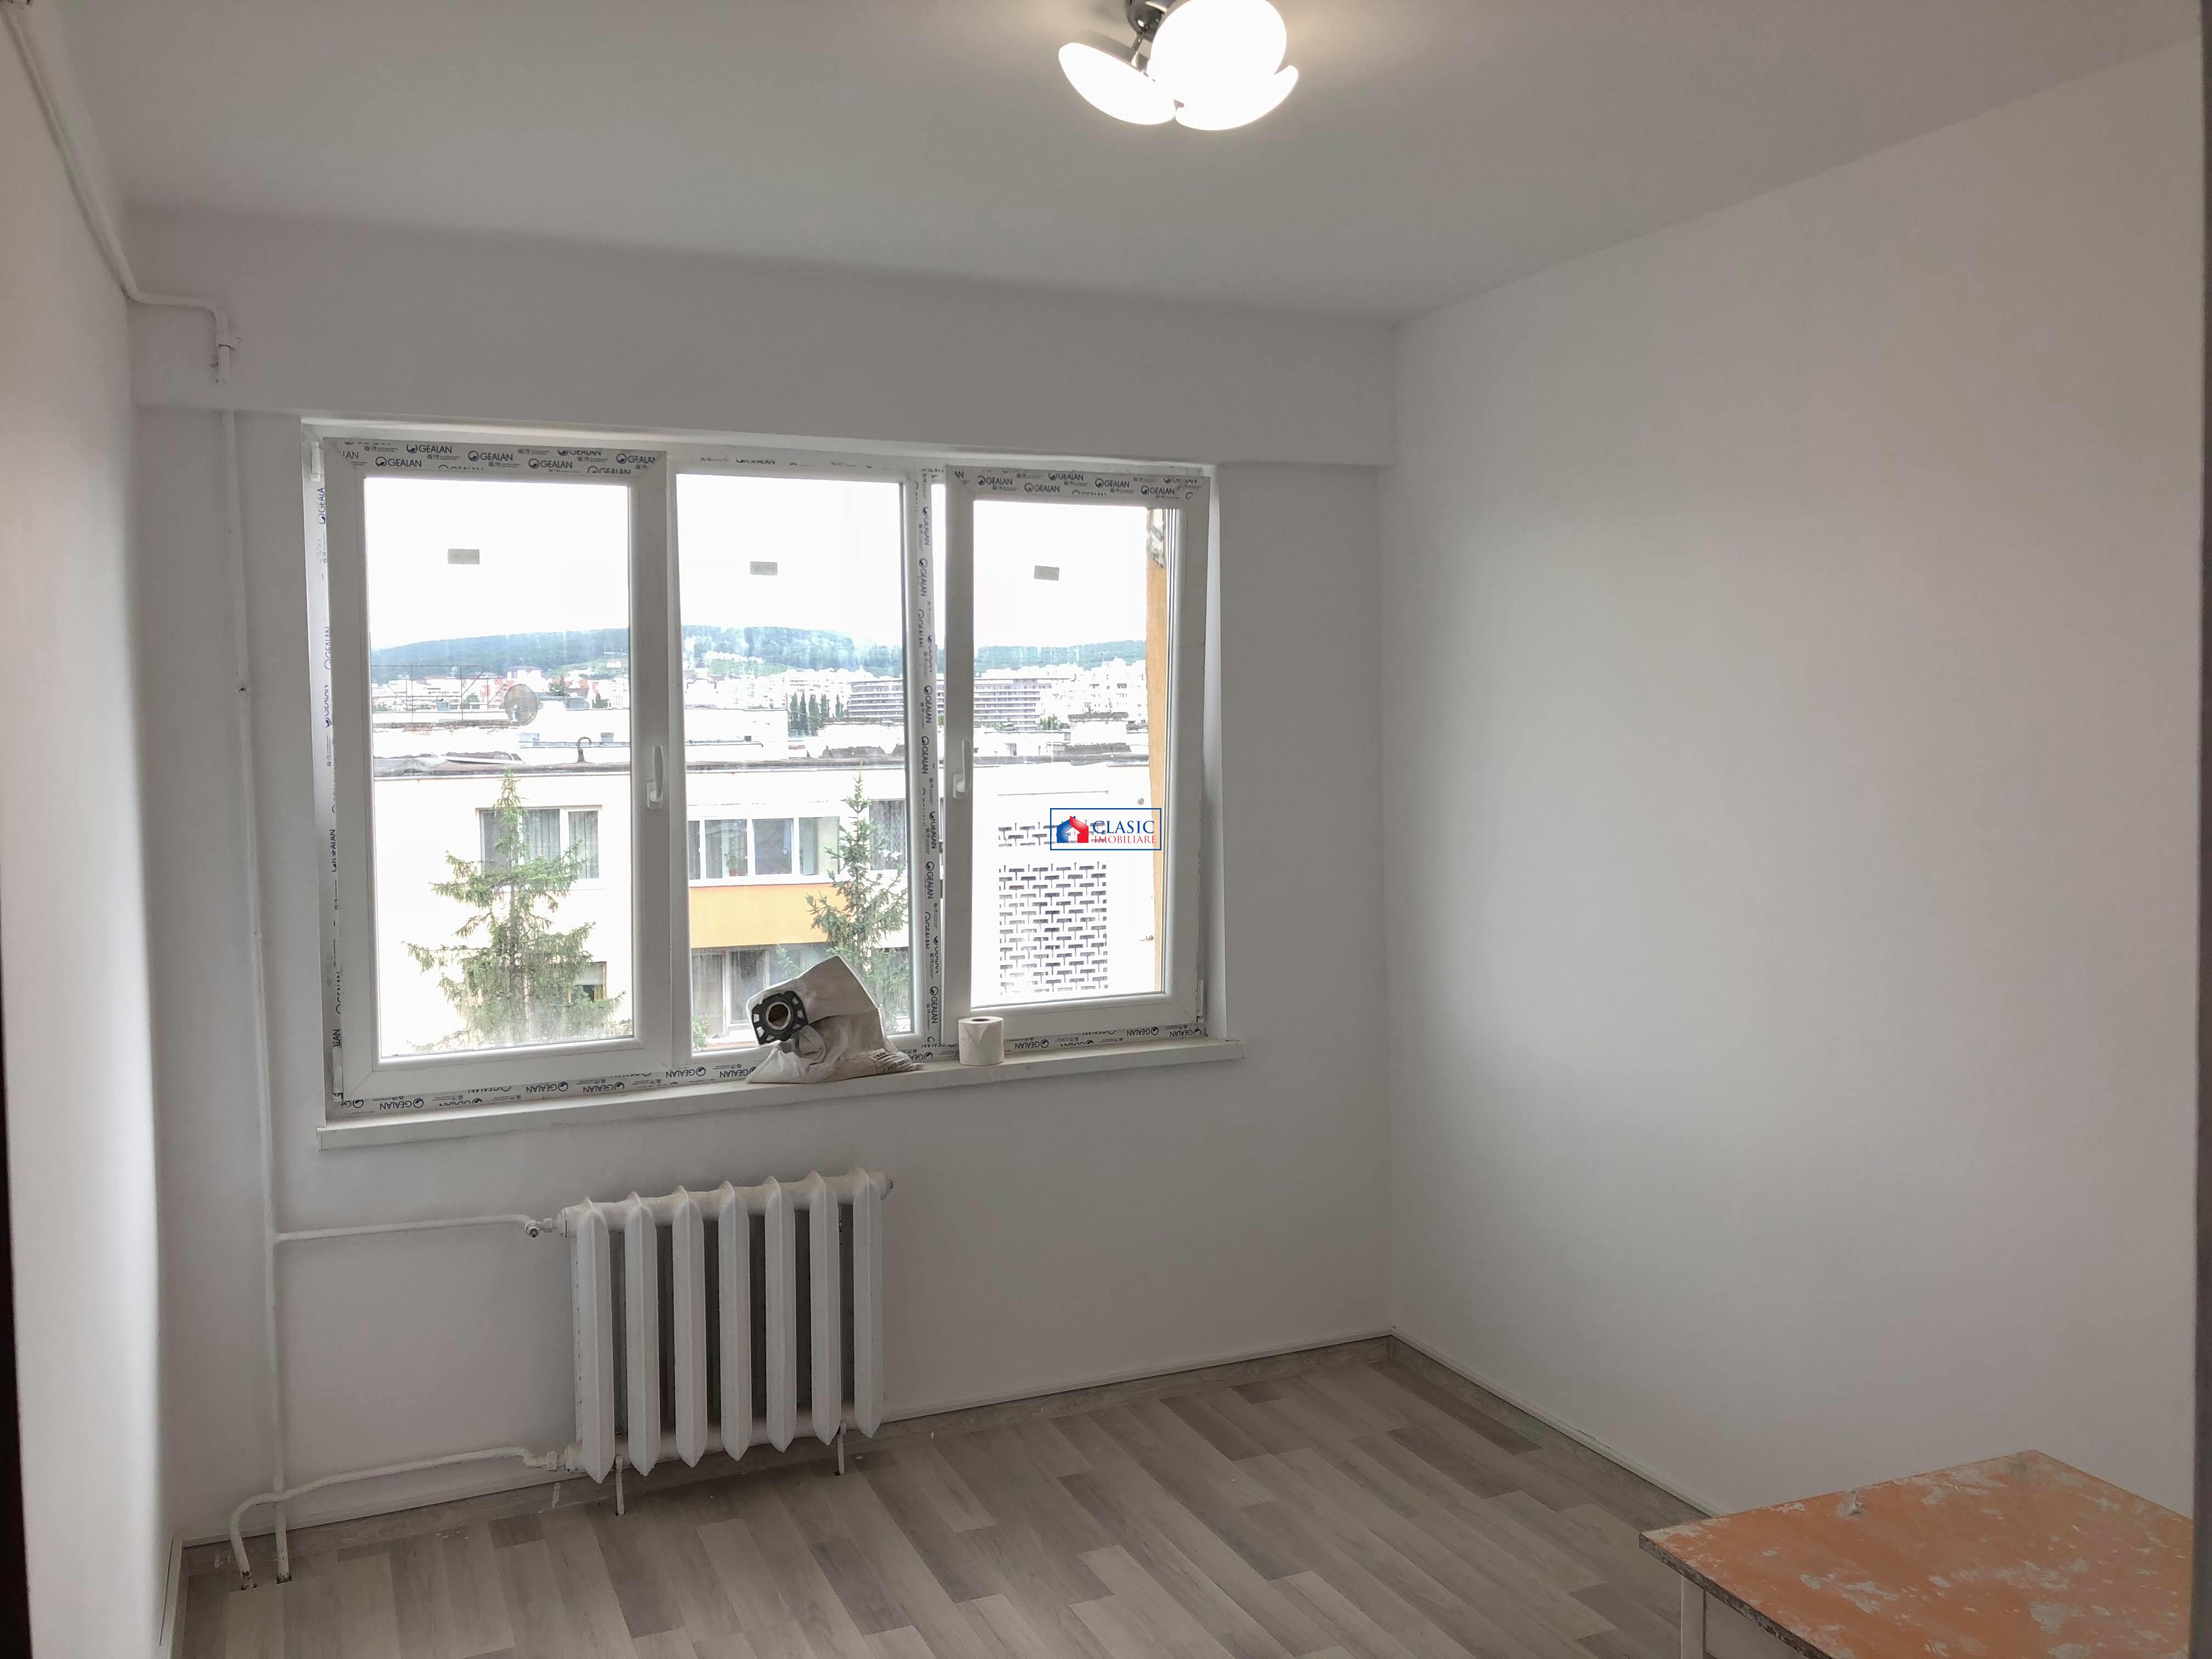 Inchiriere Apartament sau birou 4 camere decomandate in Grigorescu